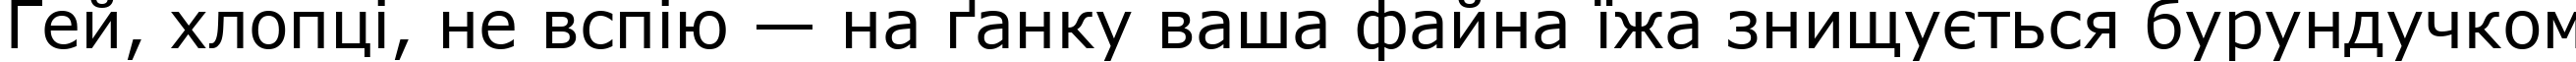 Пример написания шрифтом MS Reference Sans Serif текста на украинском